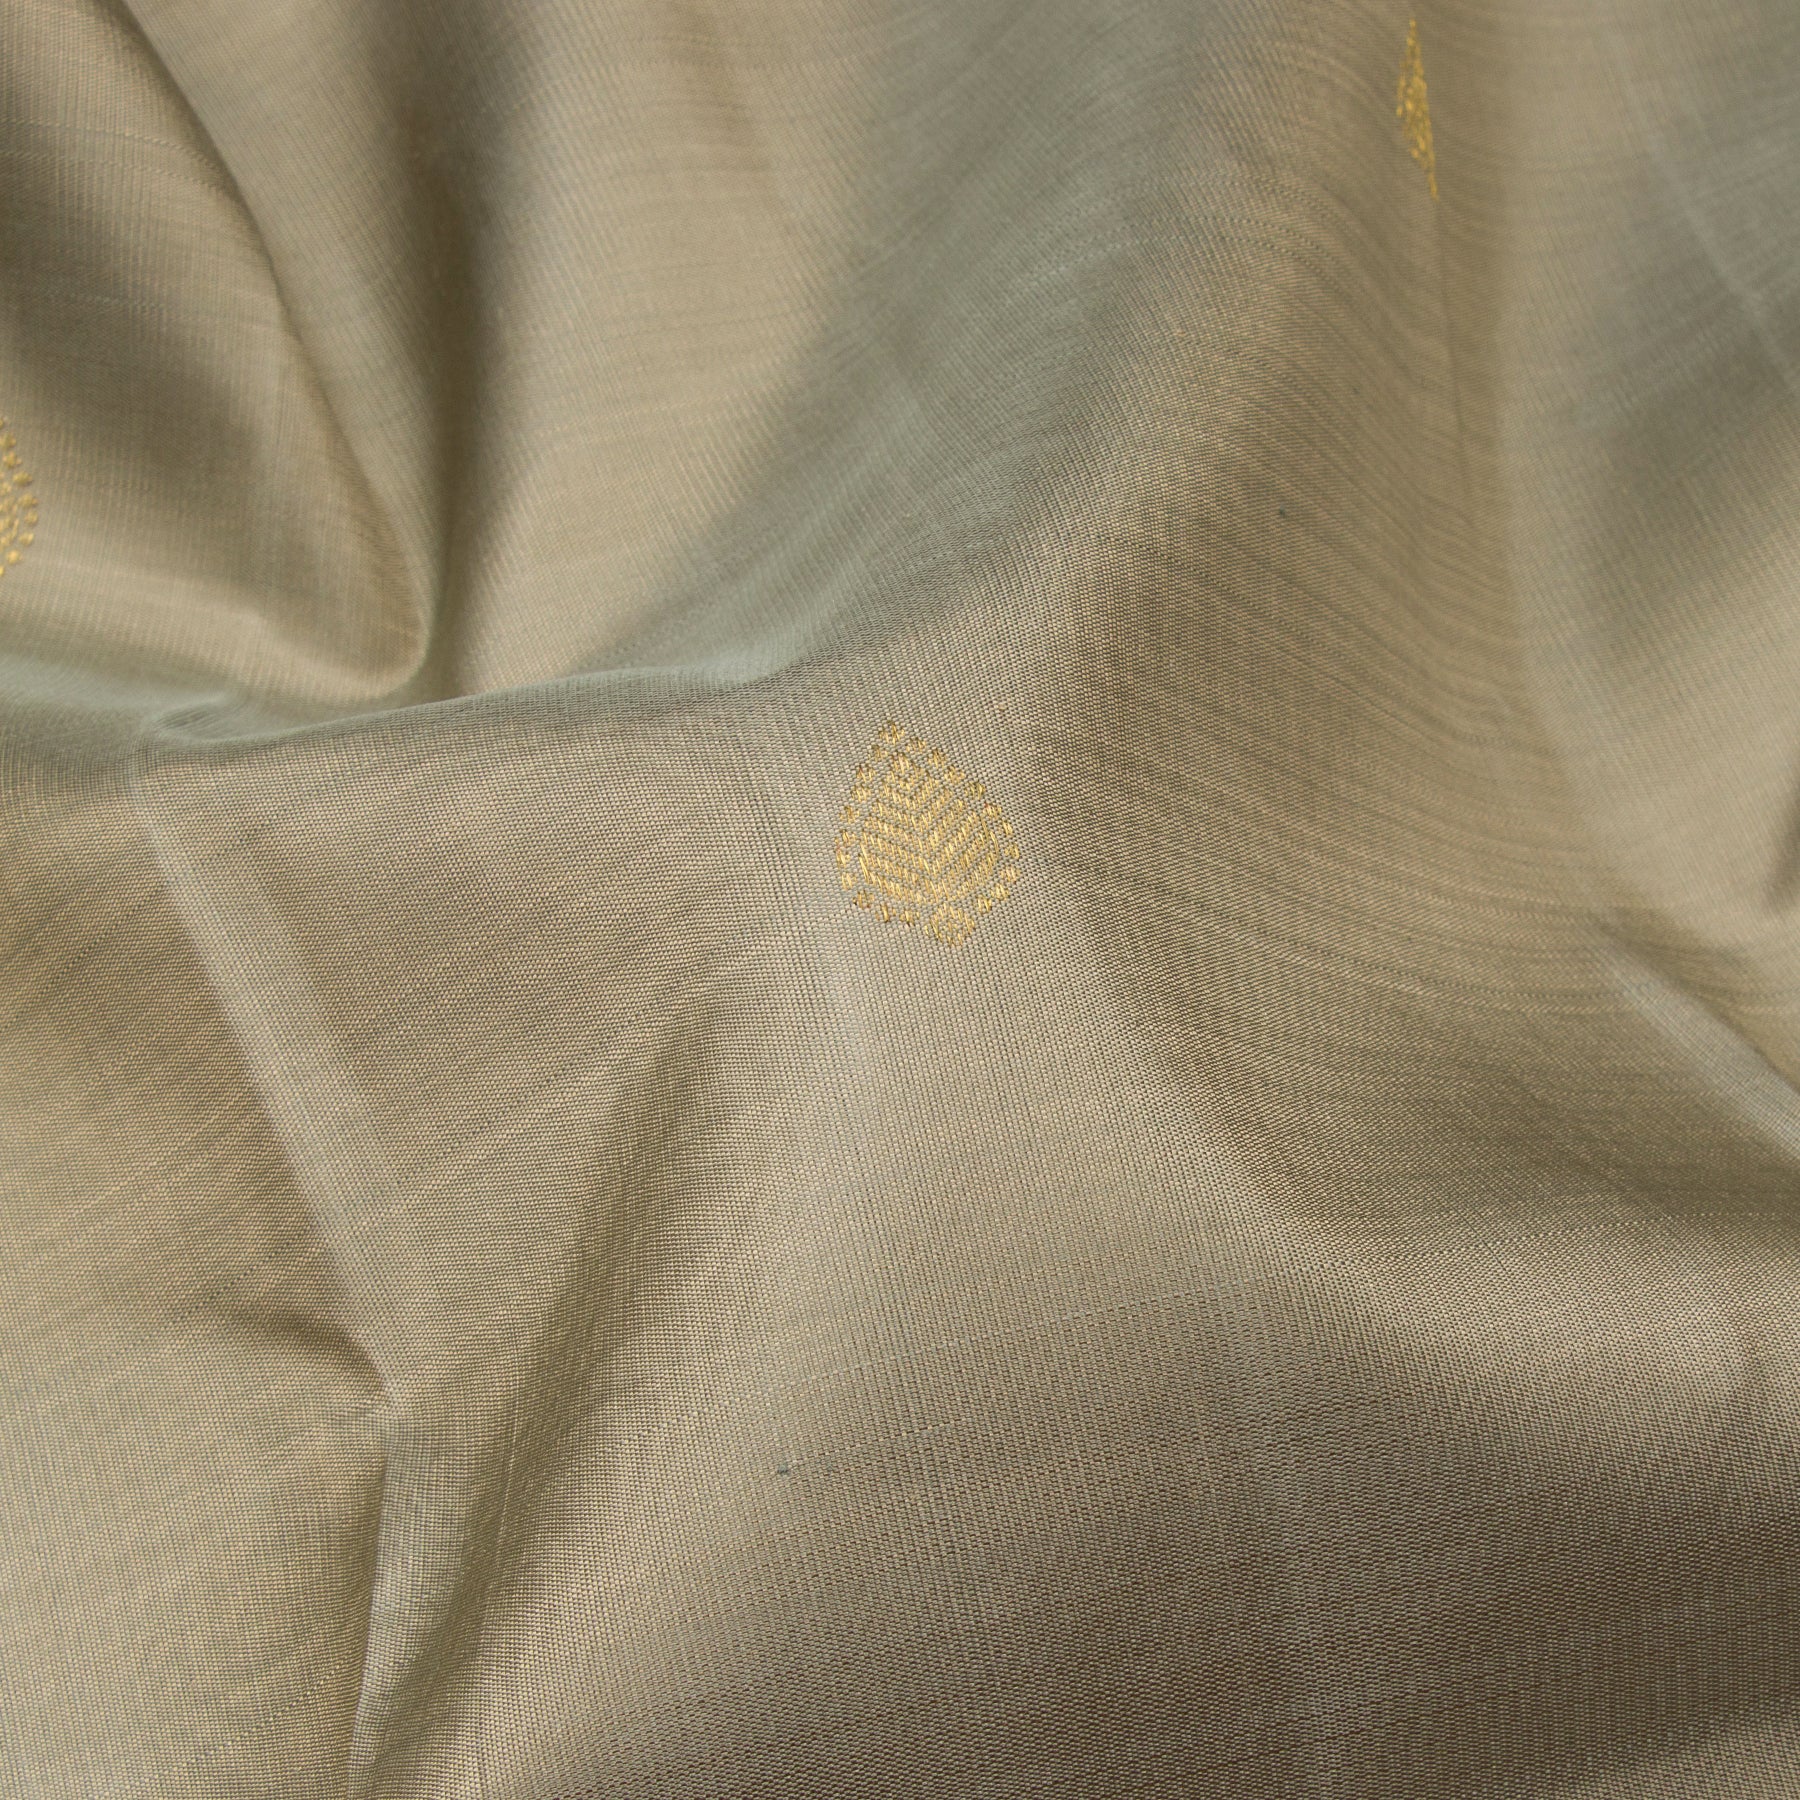 Kanakavalli Kanjivaram Silk Sari 23-041-HS001-13157 - Fabric View